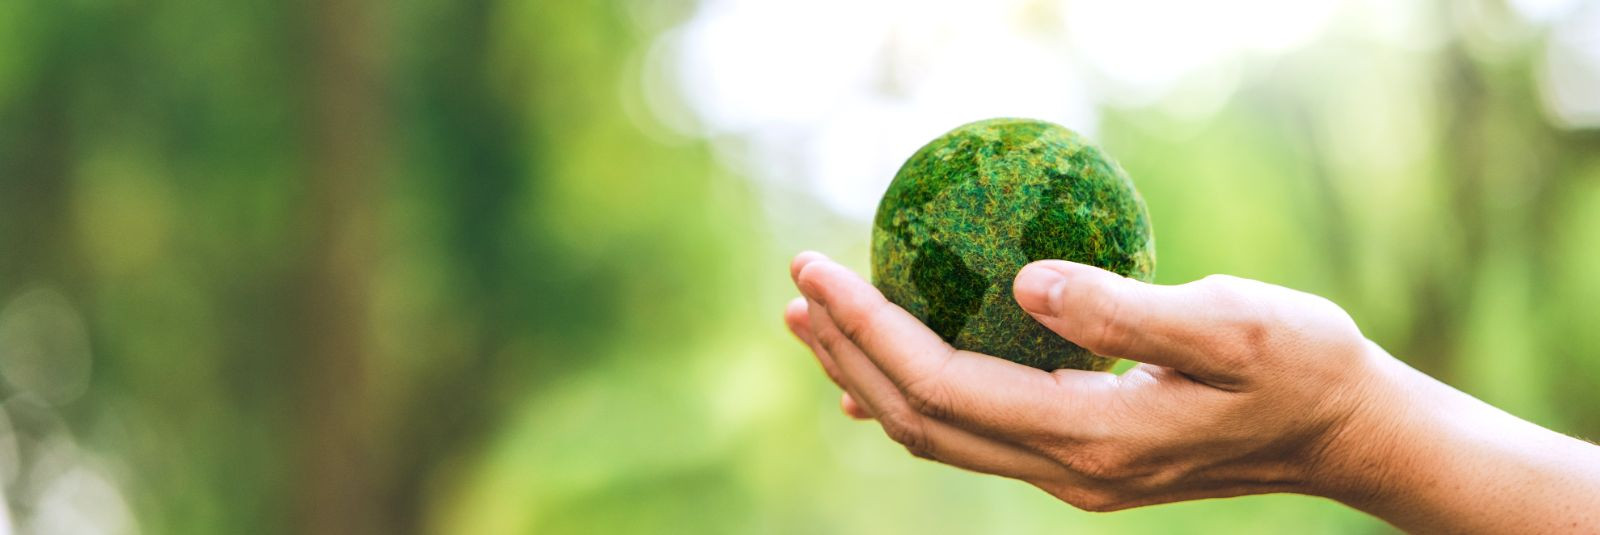 Eesti Keskkonnateenused AS on Eesti juhtiv jäätmekäitlus- ja kommunaalteenuseid pakkuv ettevõte, kelle visiooniks on luua keskkonnasõbralikum ja jätkusuutlikum 